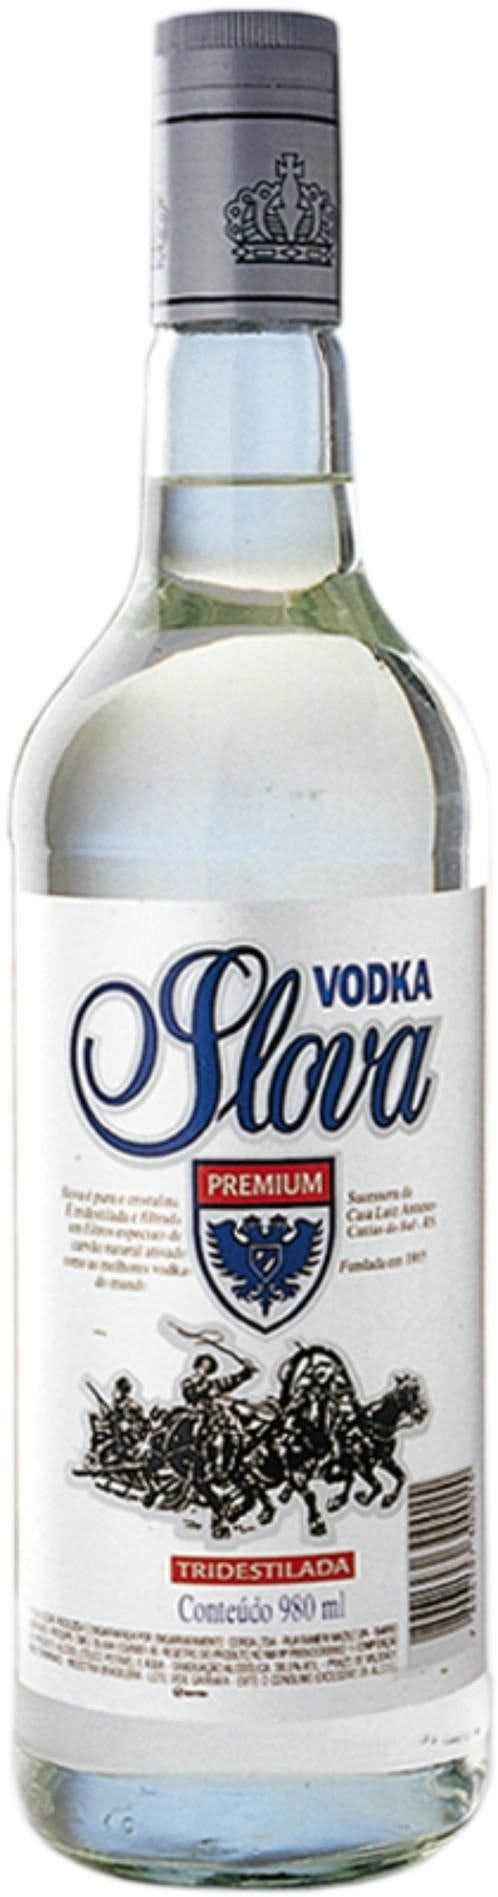 Vodka Slova 980ml